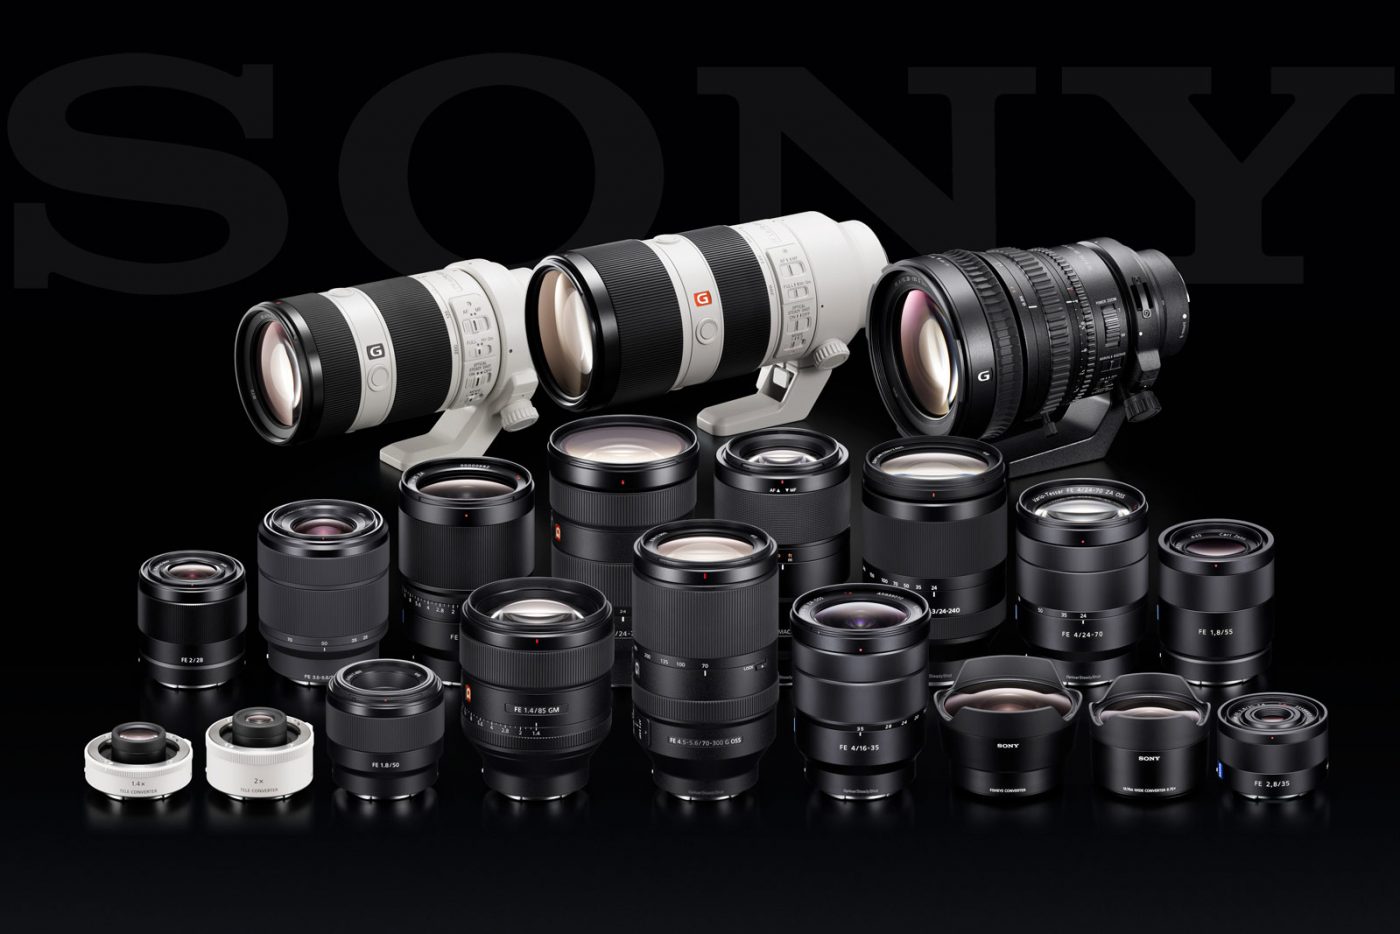 Sony's E-mount lenses